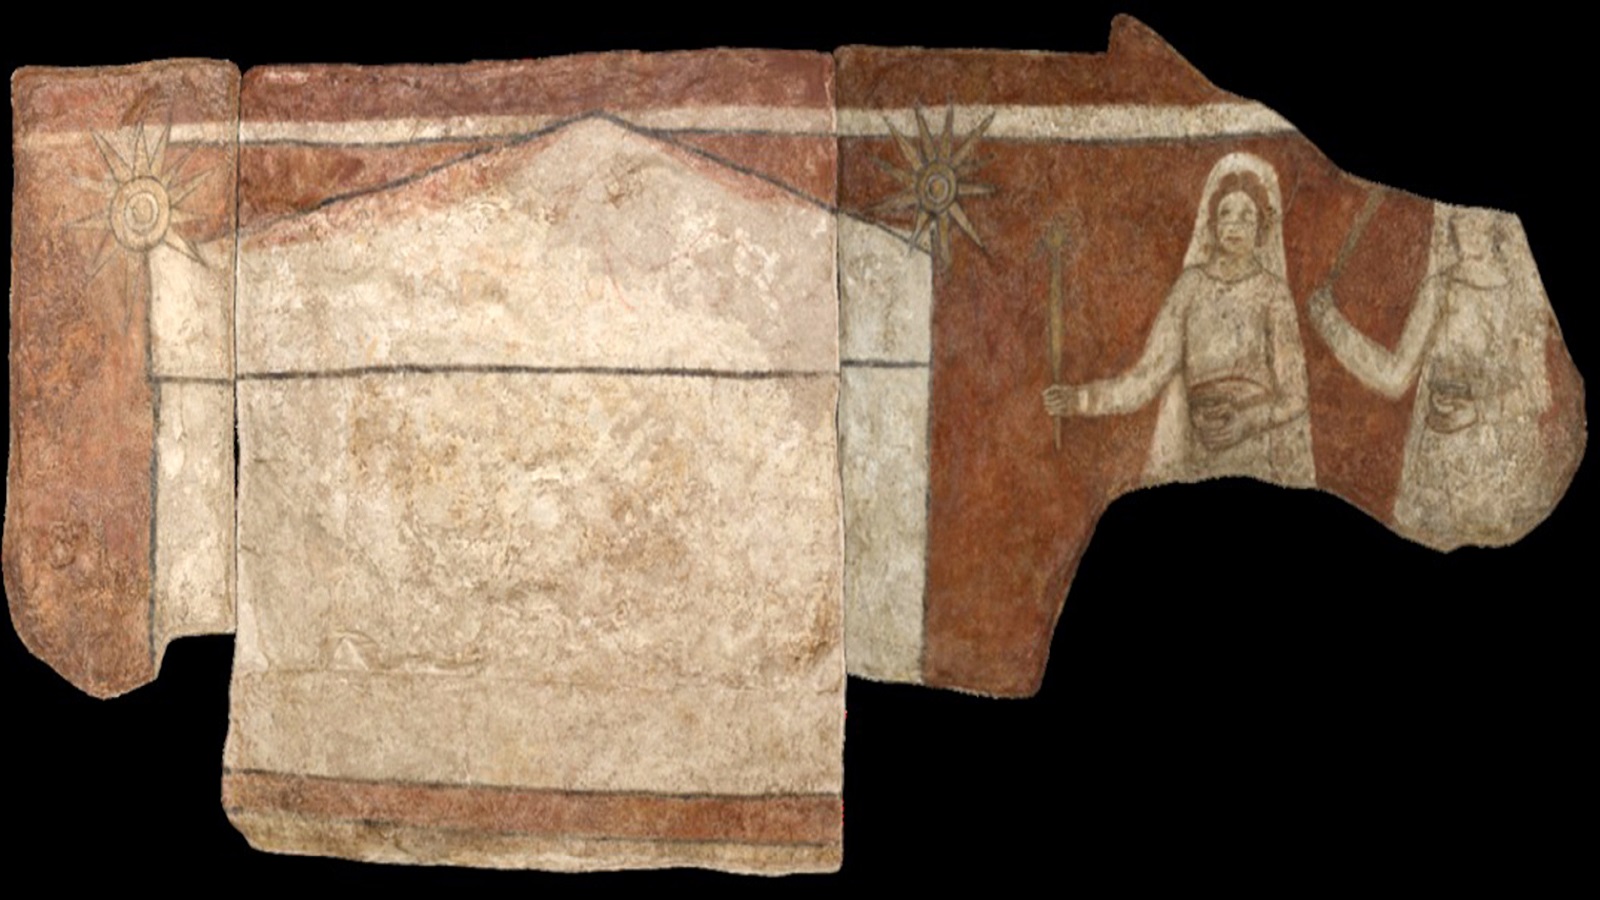  حاملات الطيب أمام الضريح، جدارية من مدينة دوارا أوروبوس السورية الفرن الثالث، متحف جامعة يال.